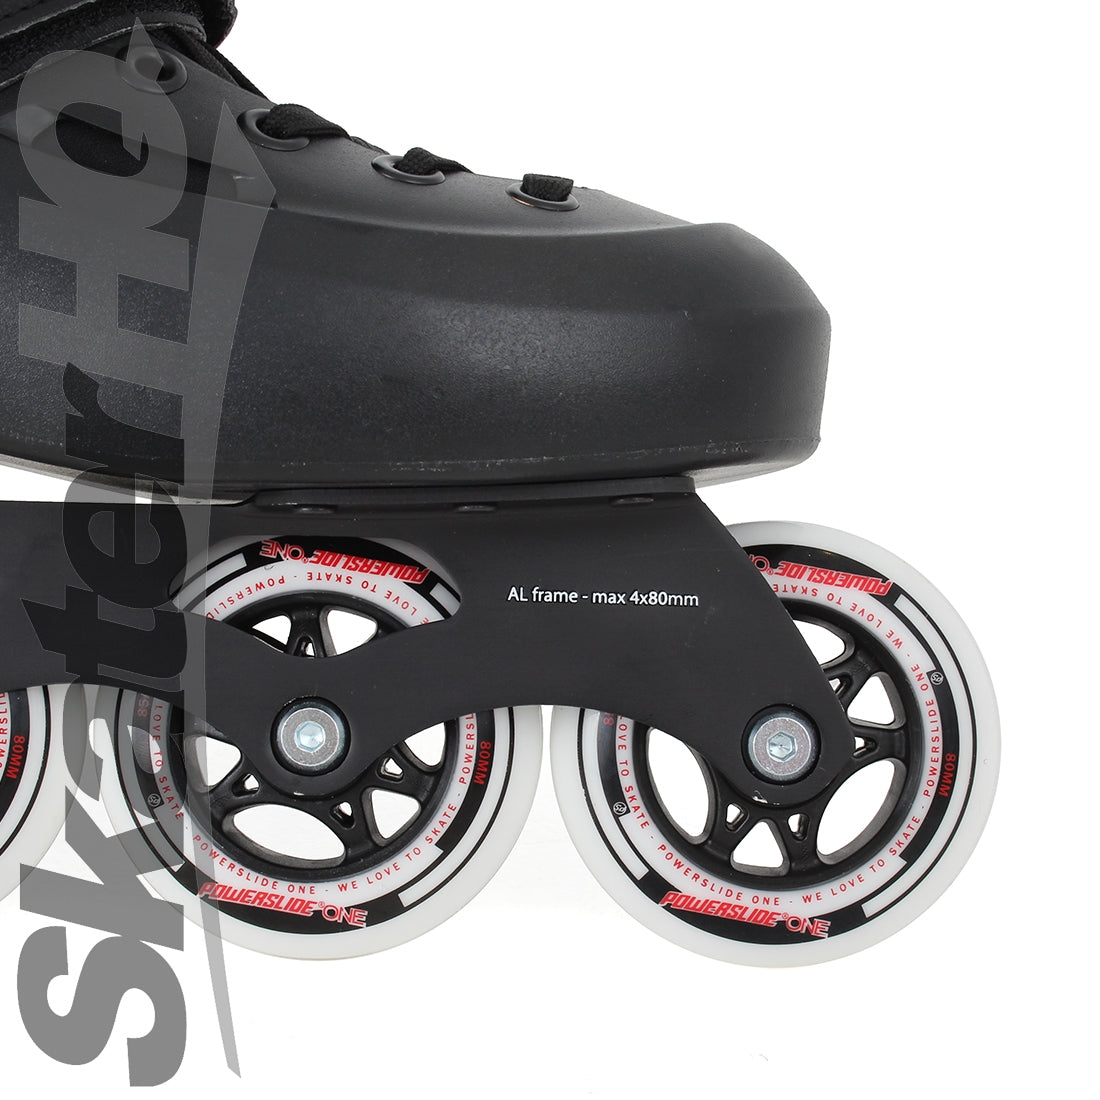 Powerslide Zoom Black 80 EU41-42 / 8-9US Inline Aggressive Skates